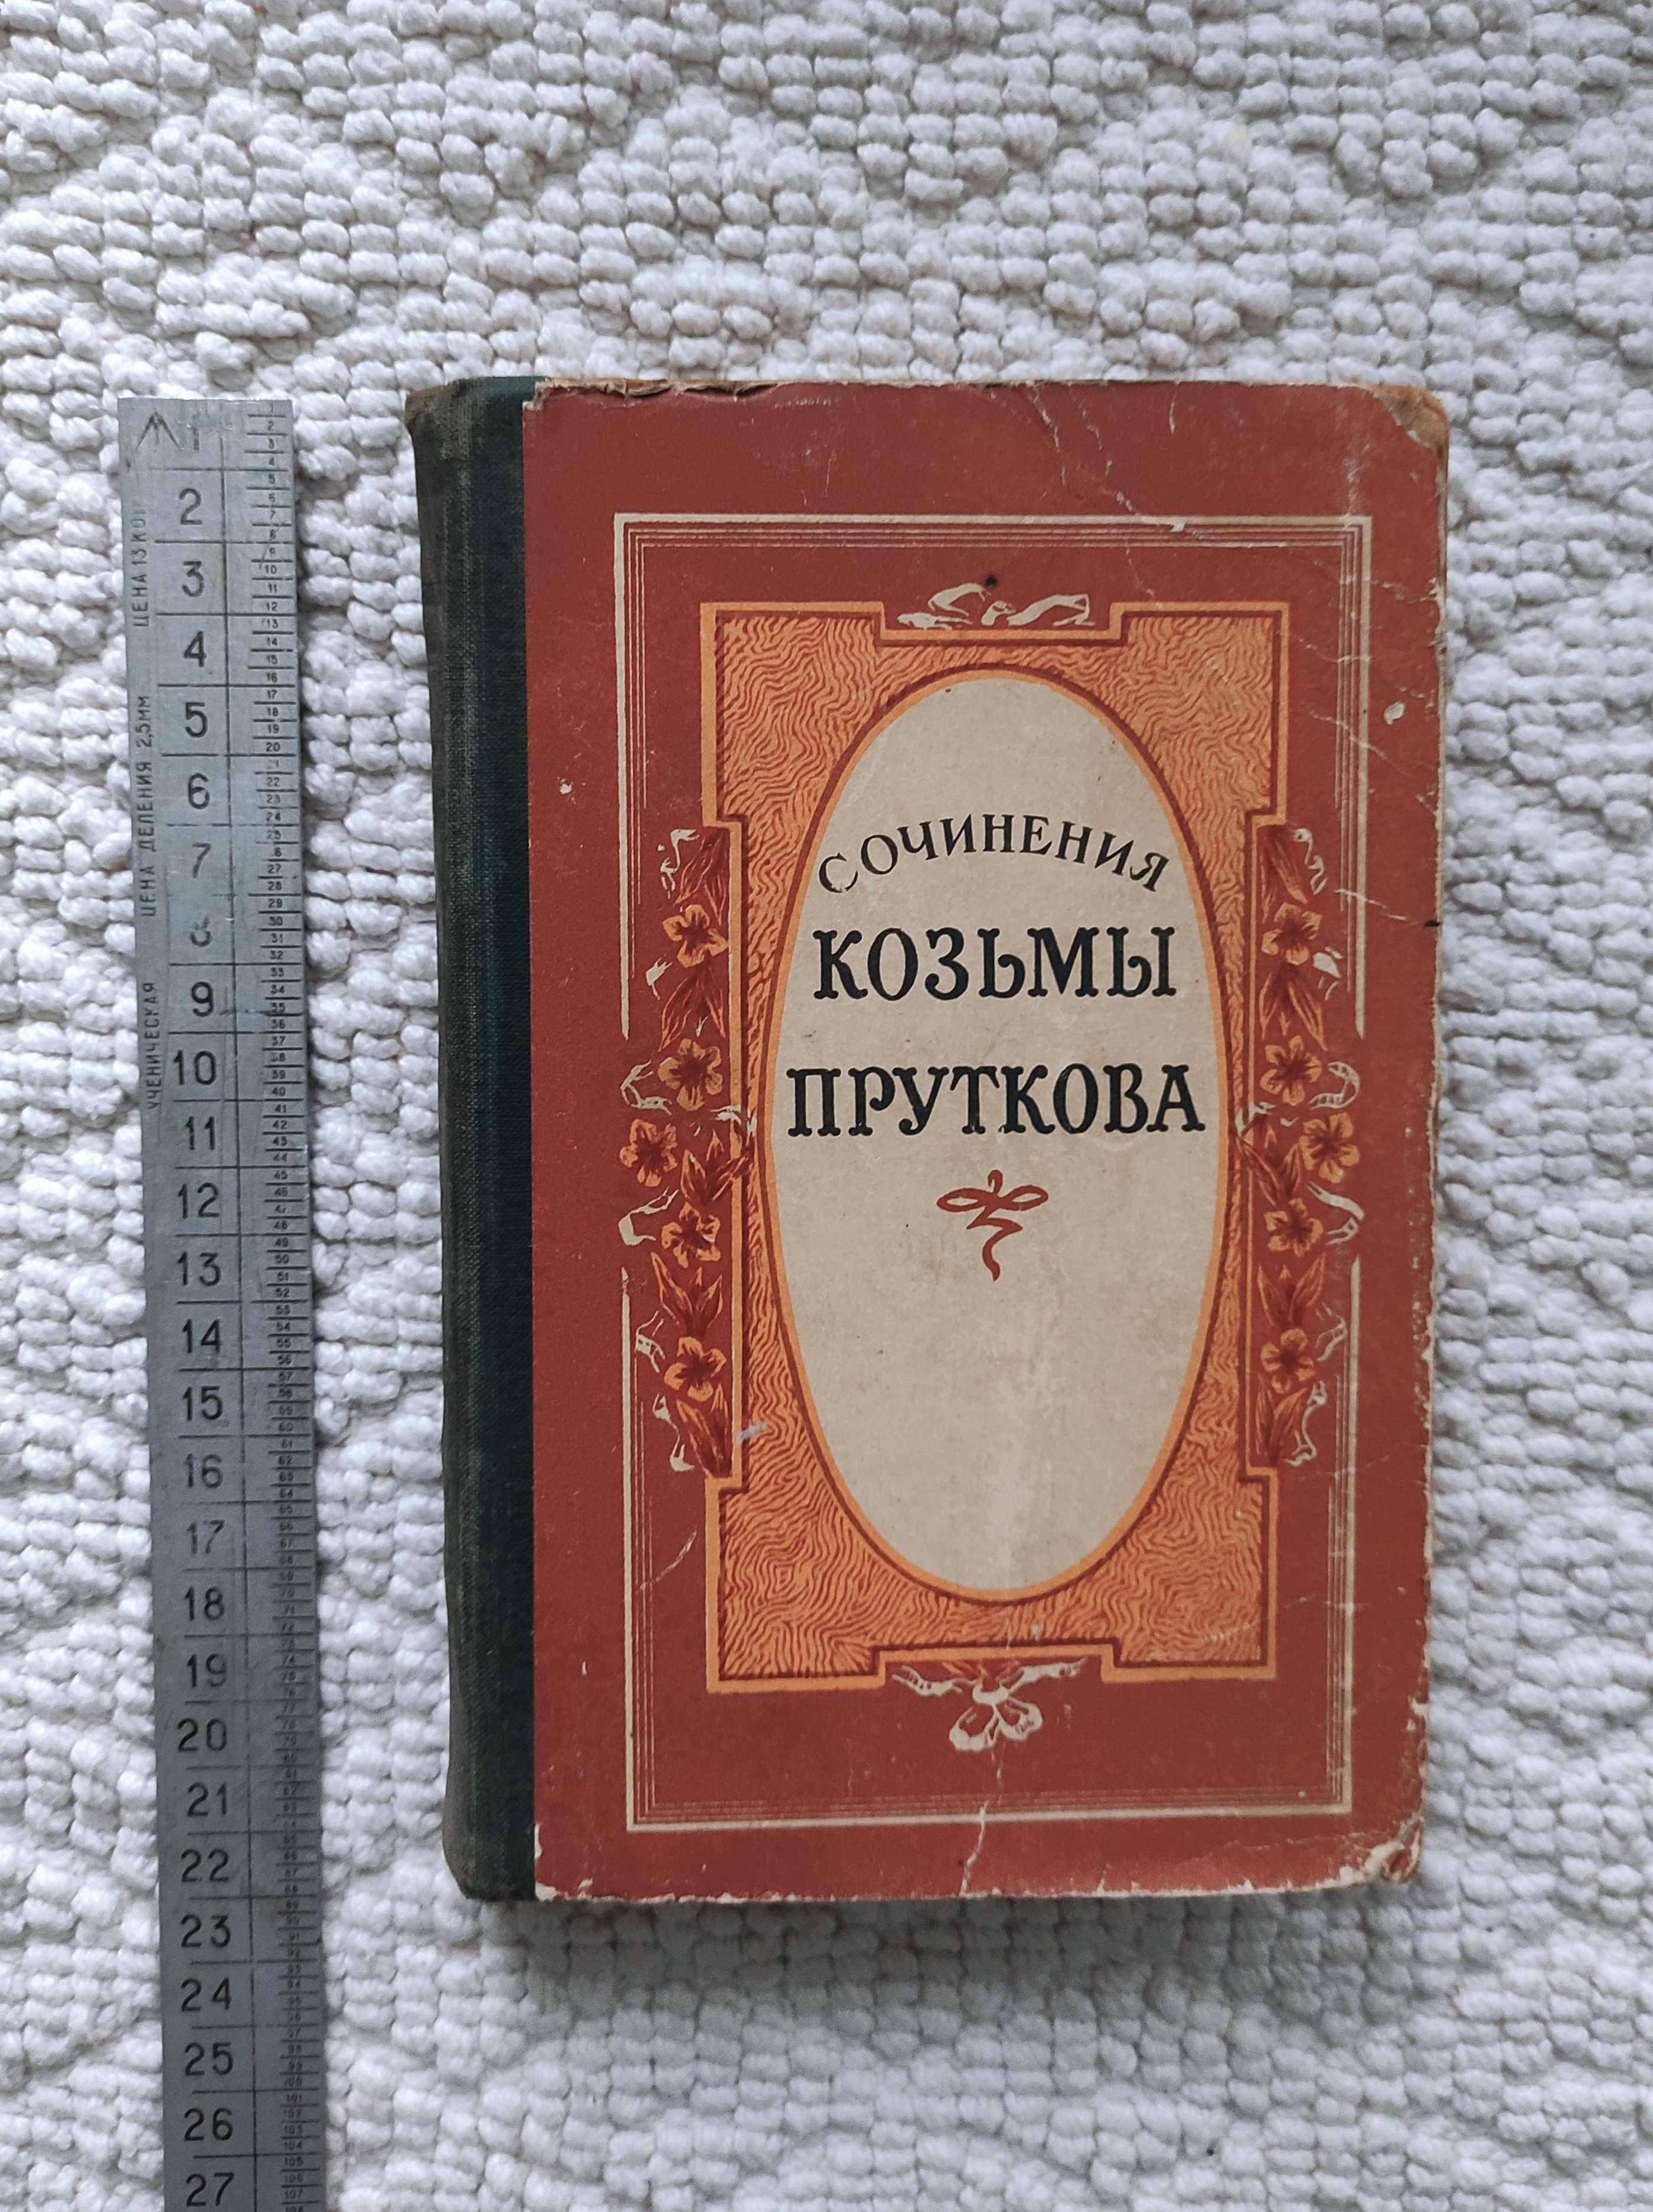 Сочинения Козьмы Пруткова. Издание 1959 г.